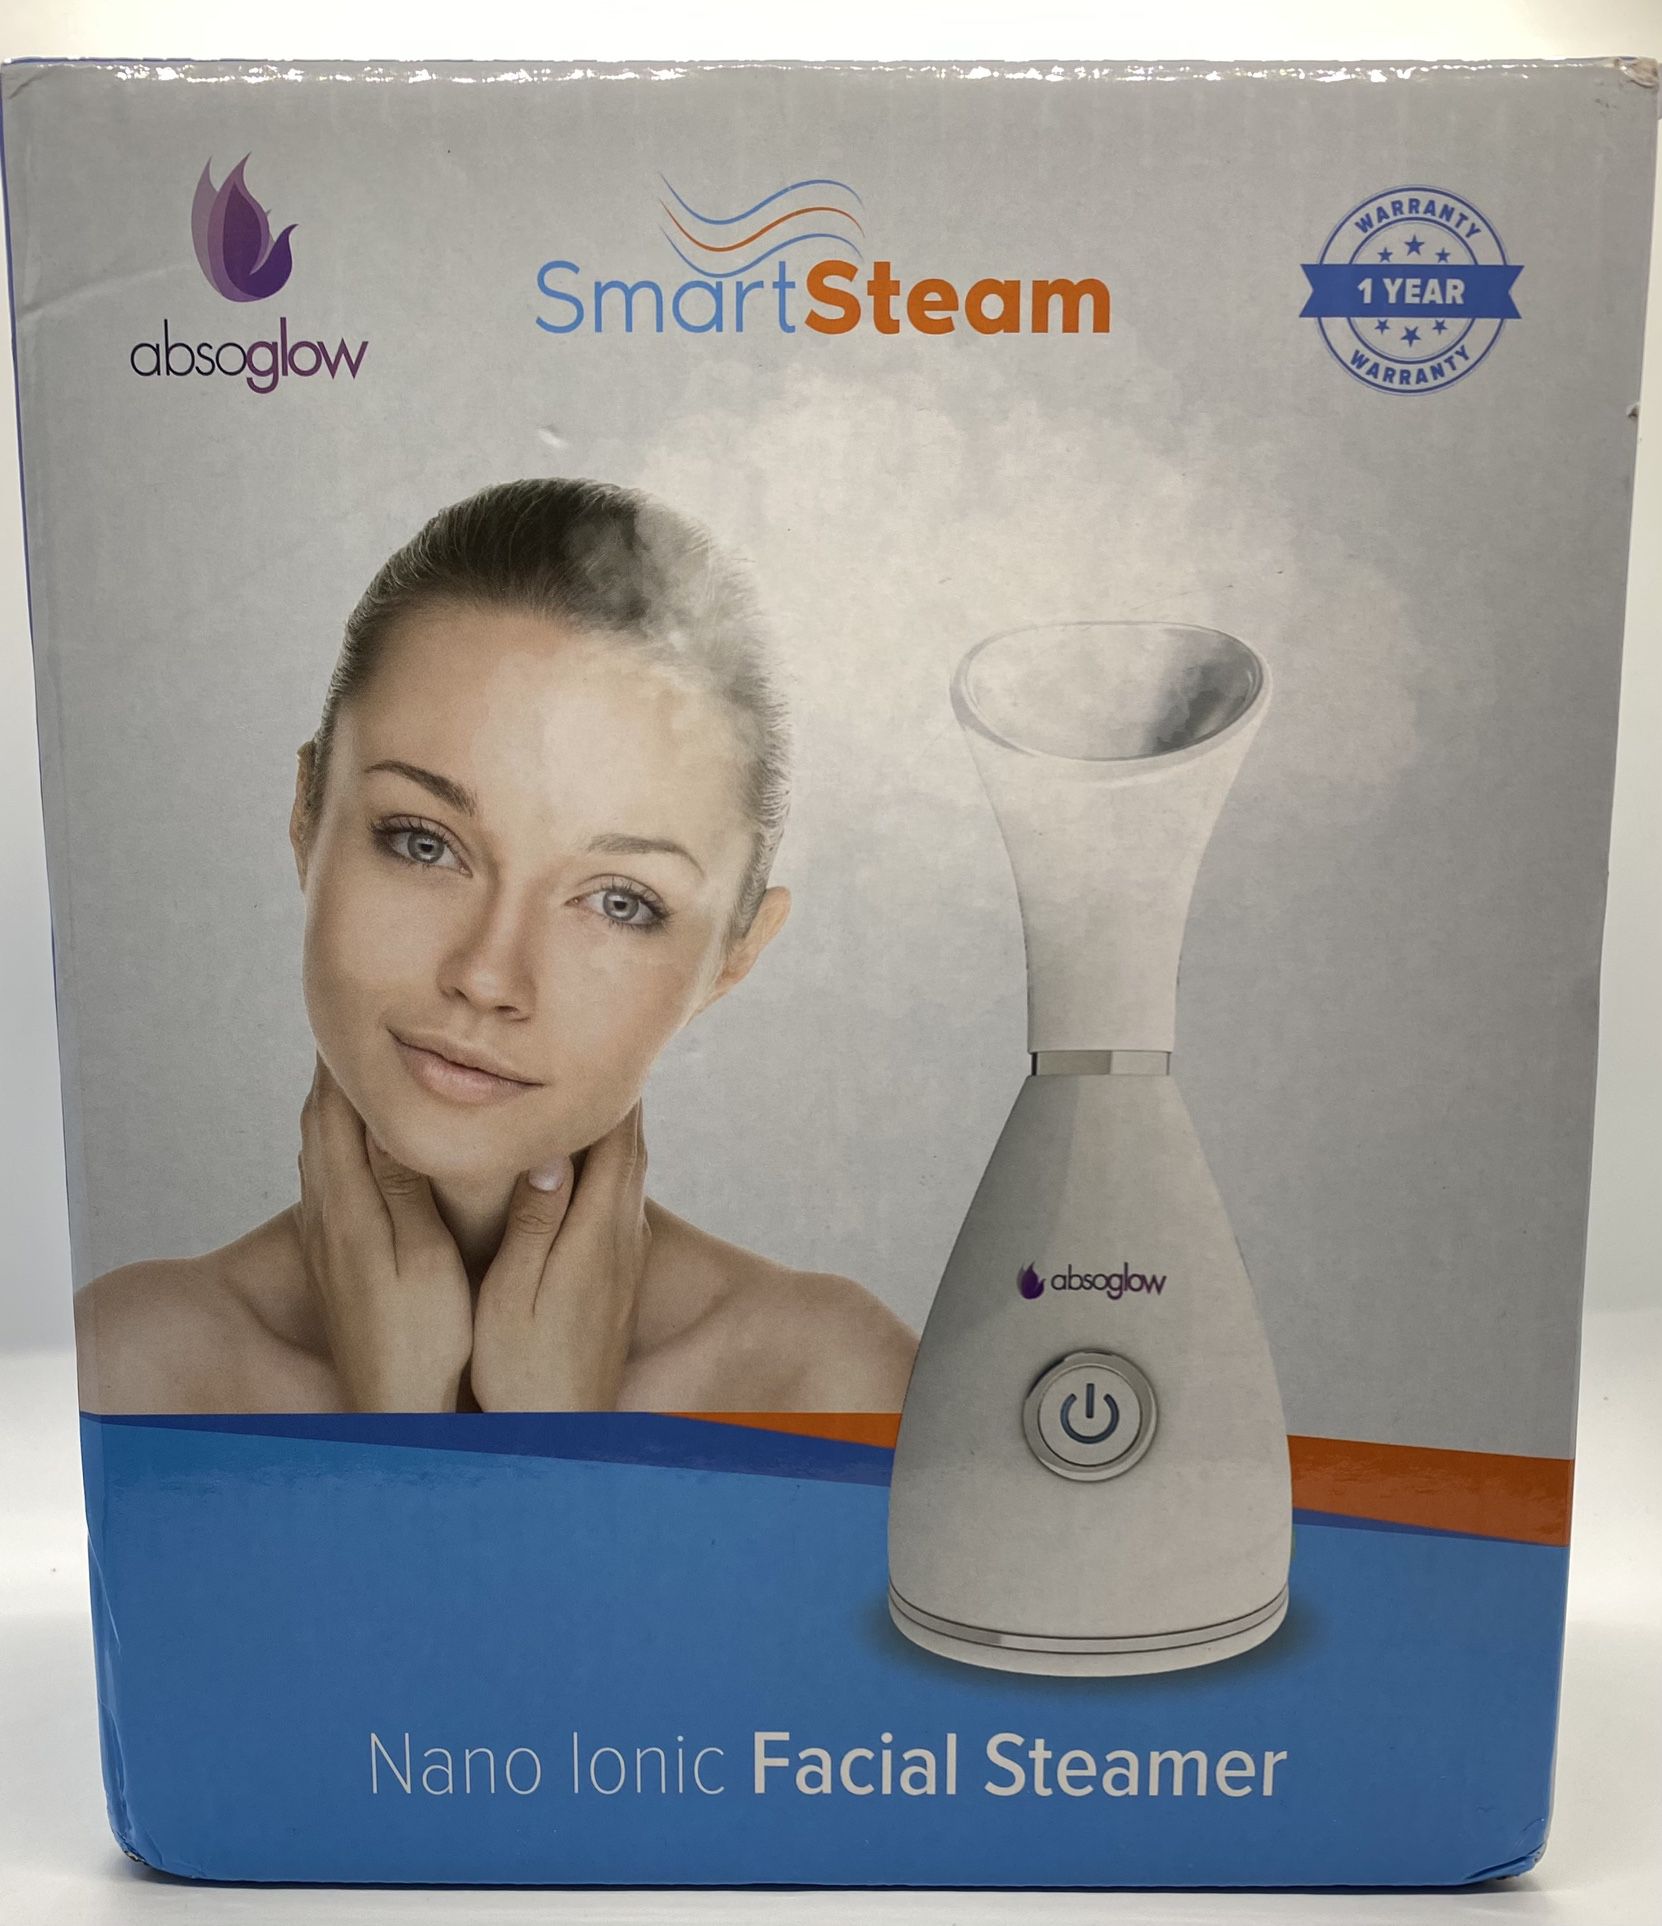 Facial steamer (absgrow)